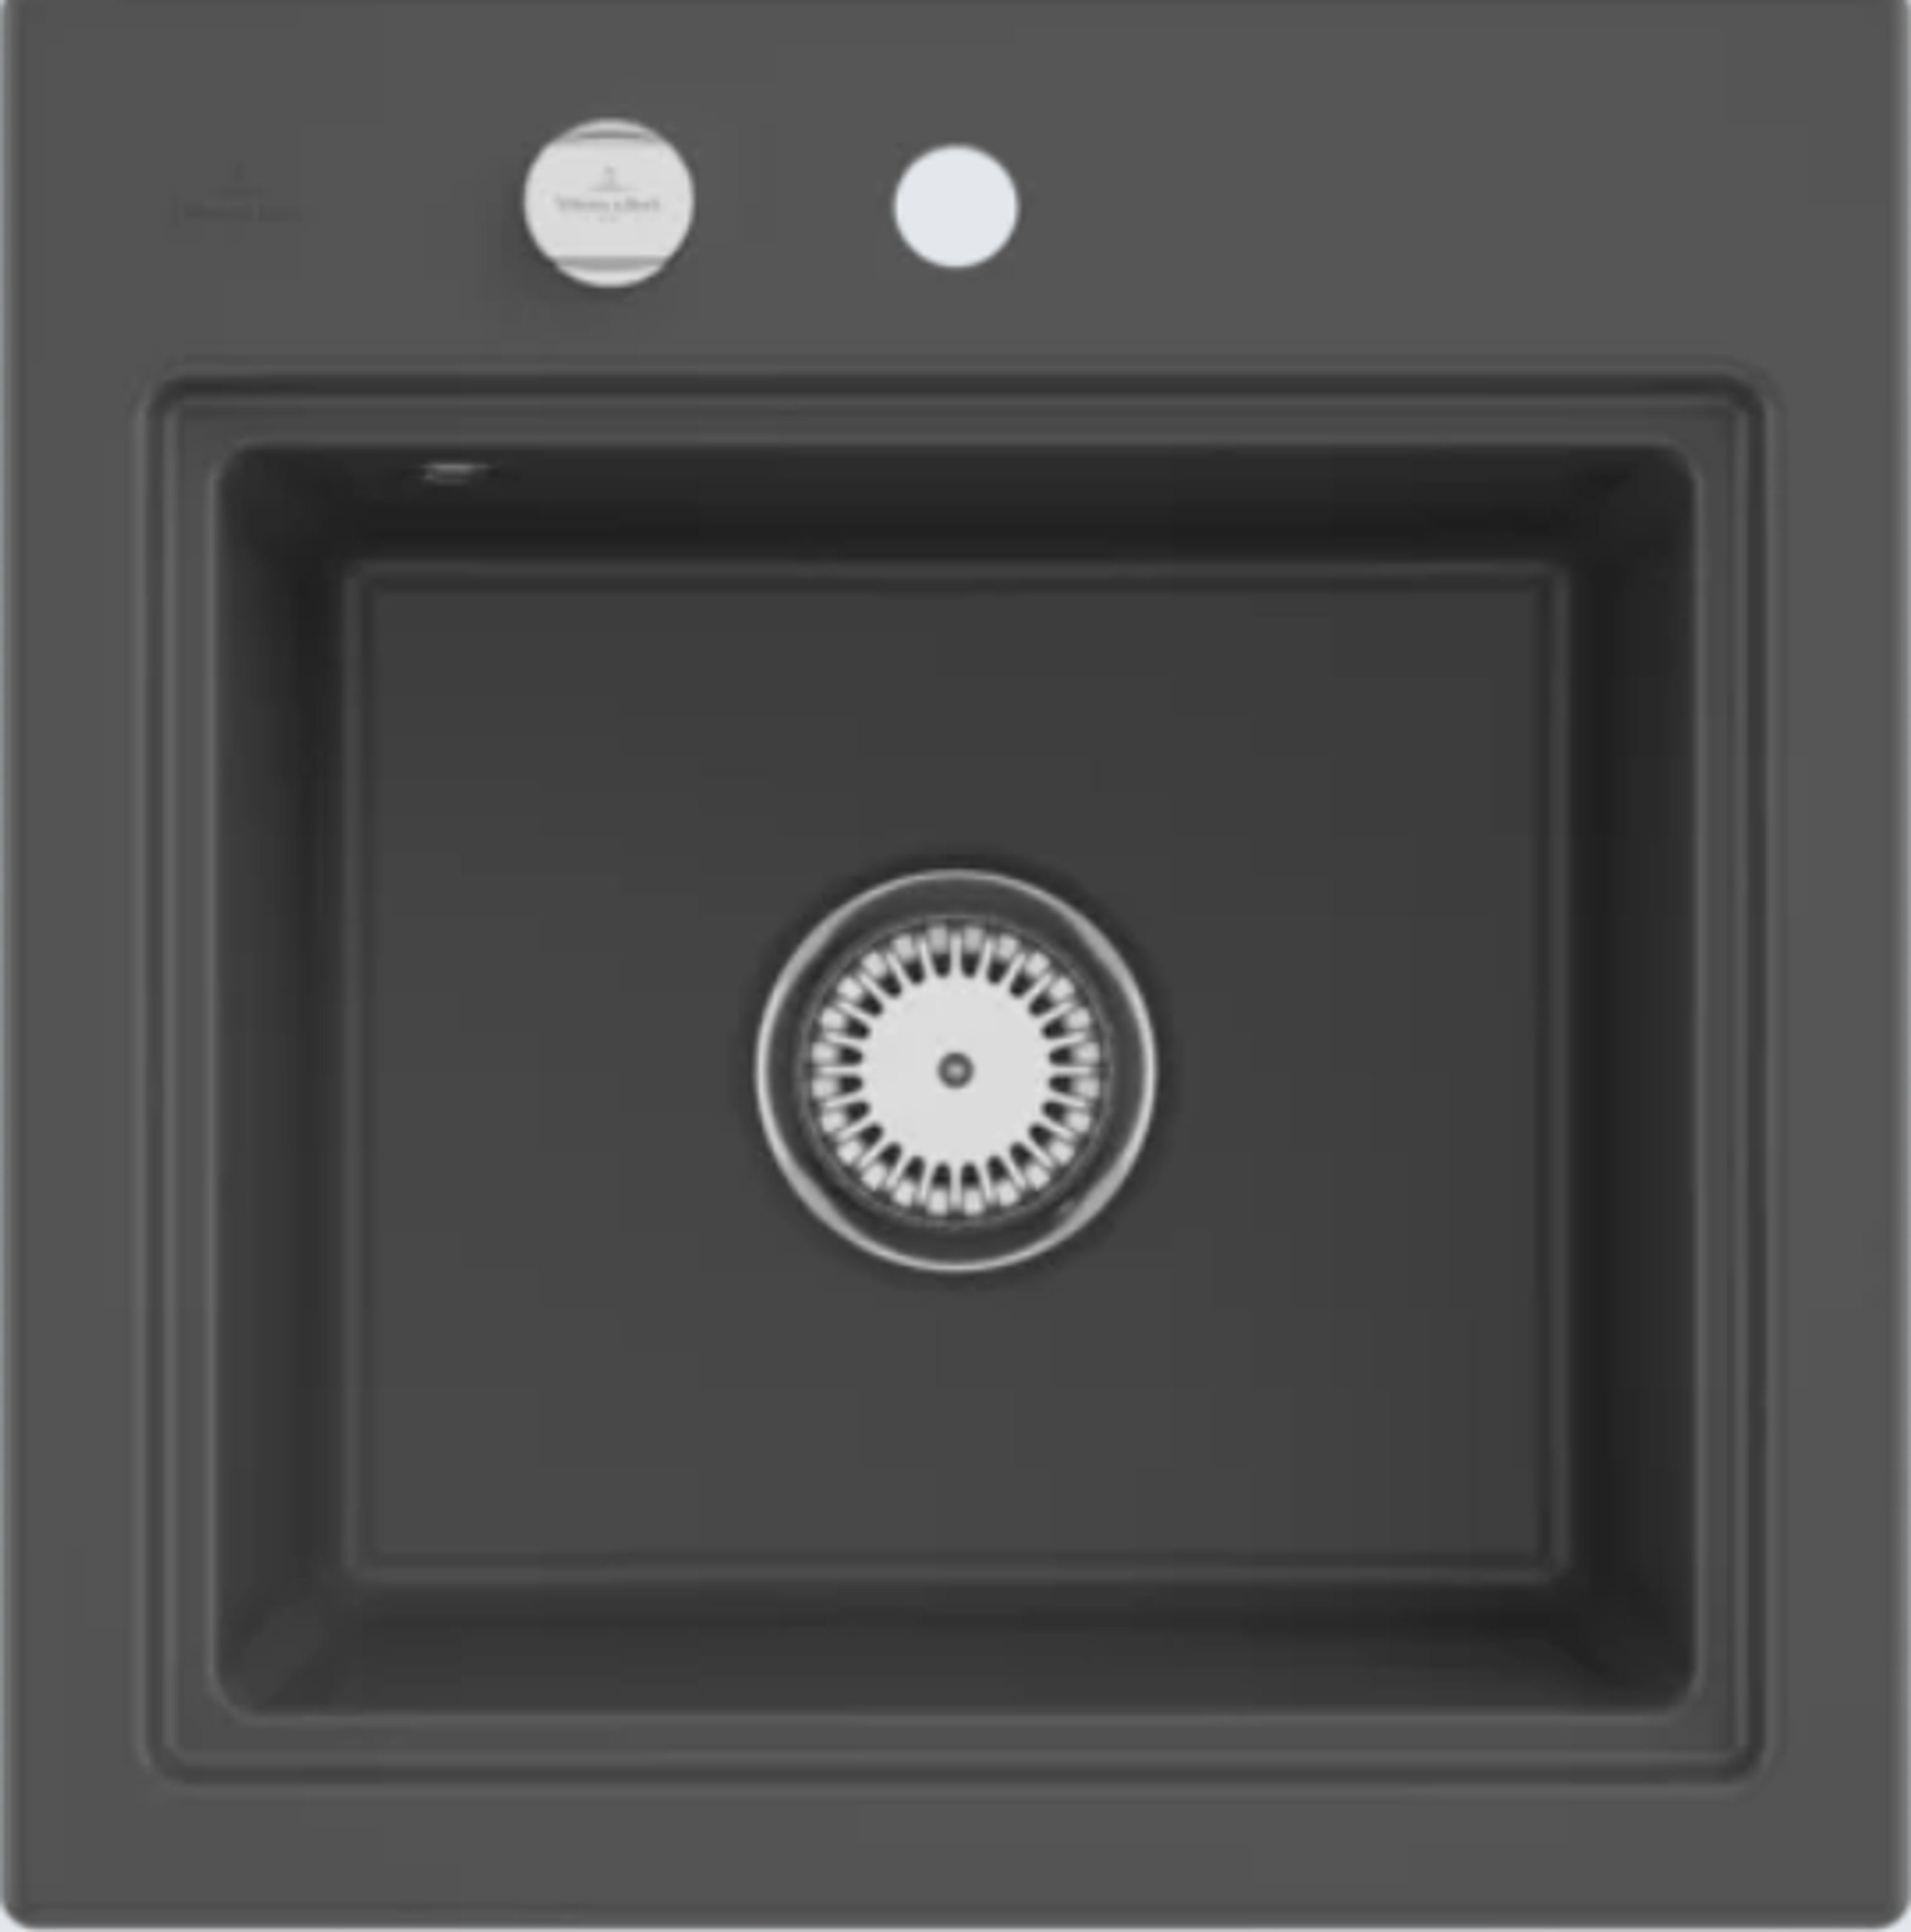 Villeroy & Boch Küchenspüle 3355 02 i4, Rechteckig, 51/22 cm, Subway Style Serie, Geschmacksmuster geschützt